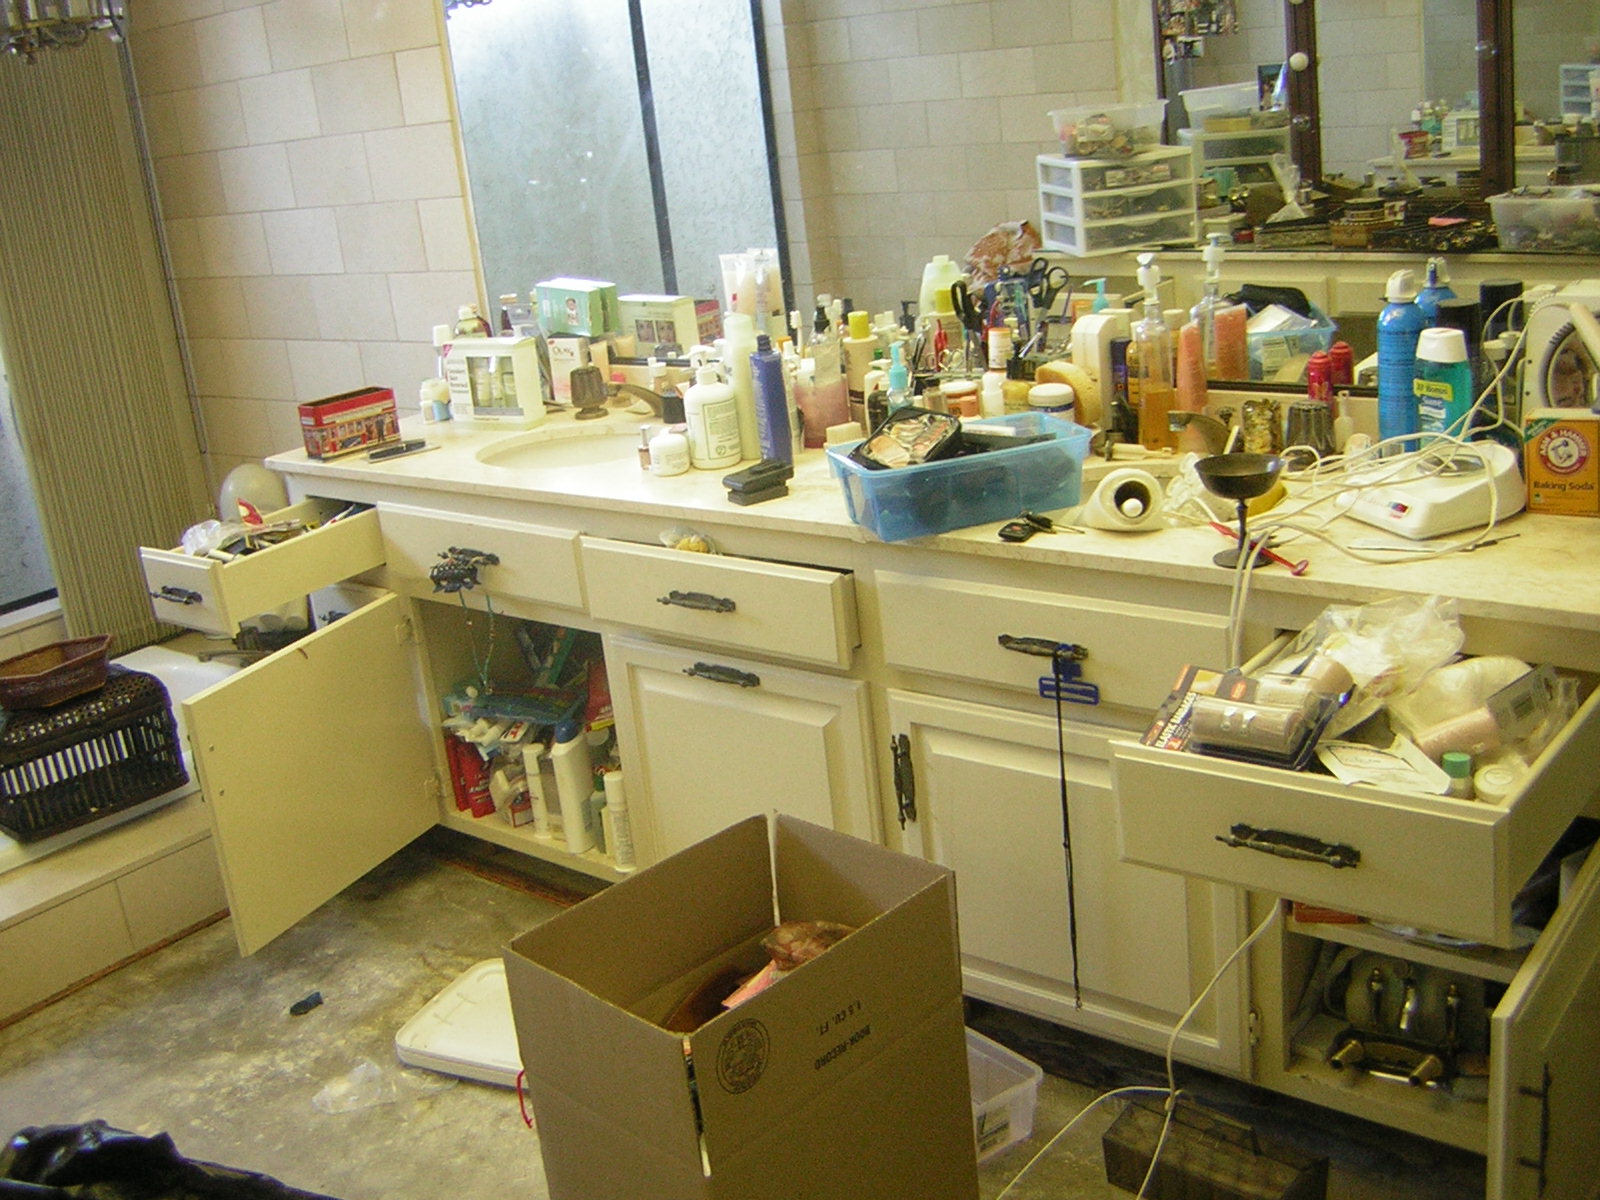 women's bathroom sink messy